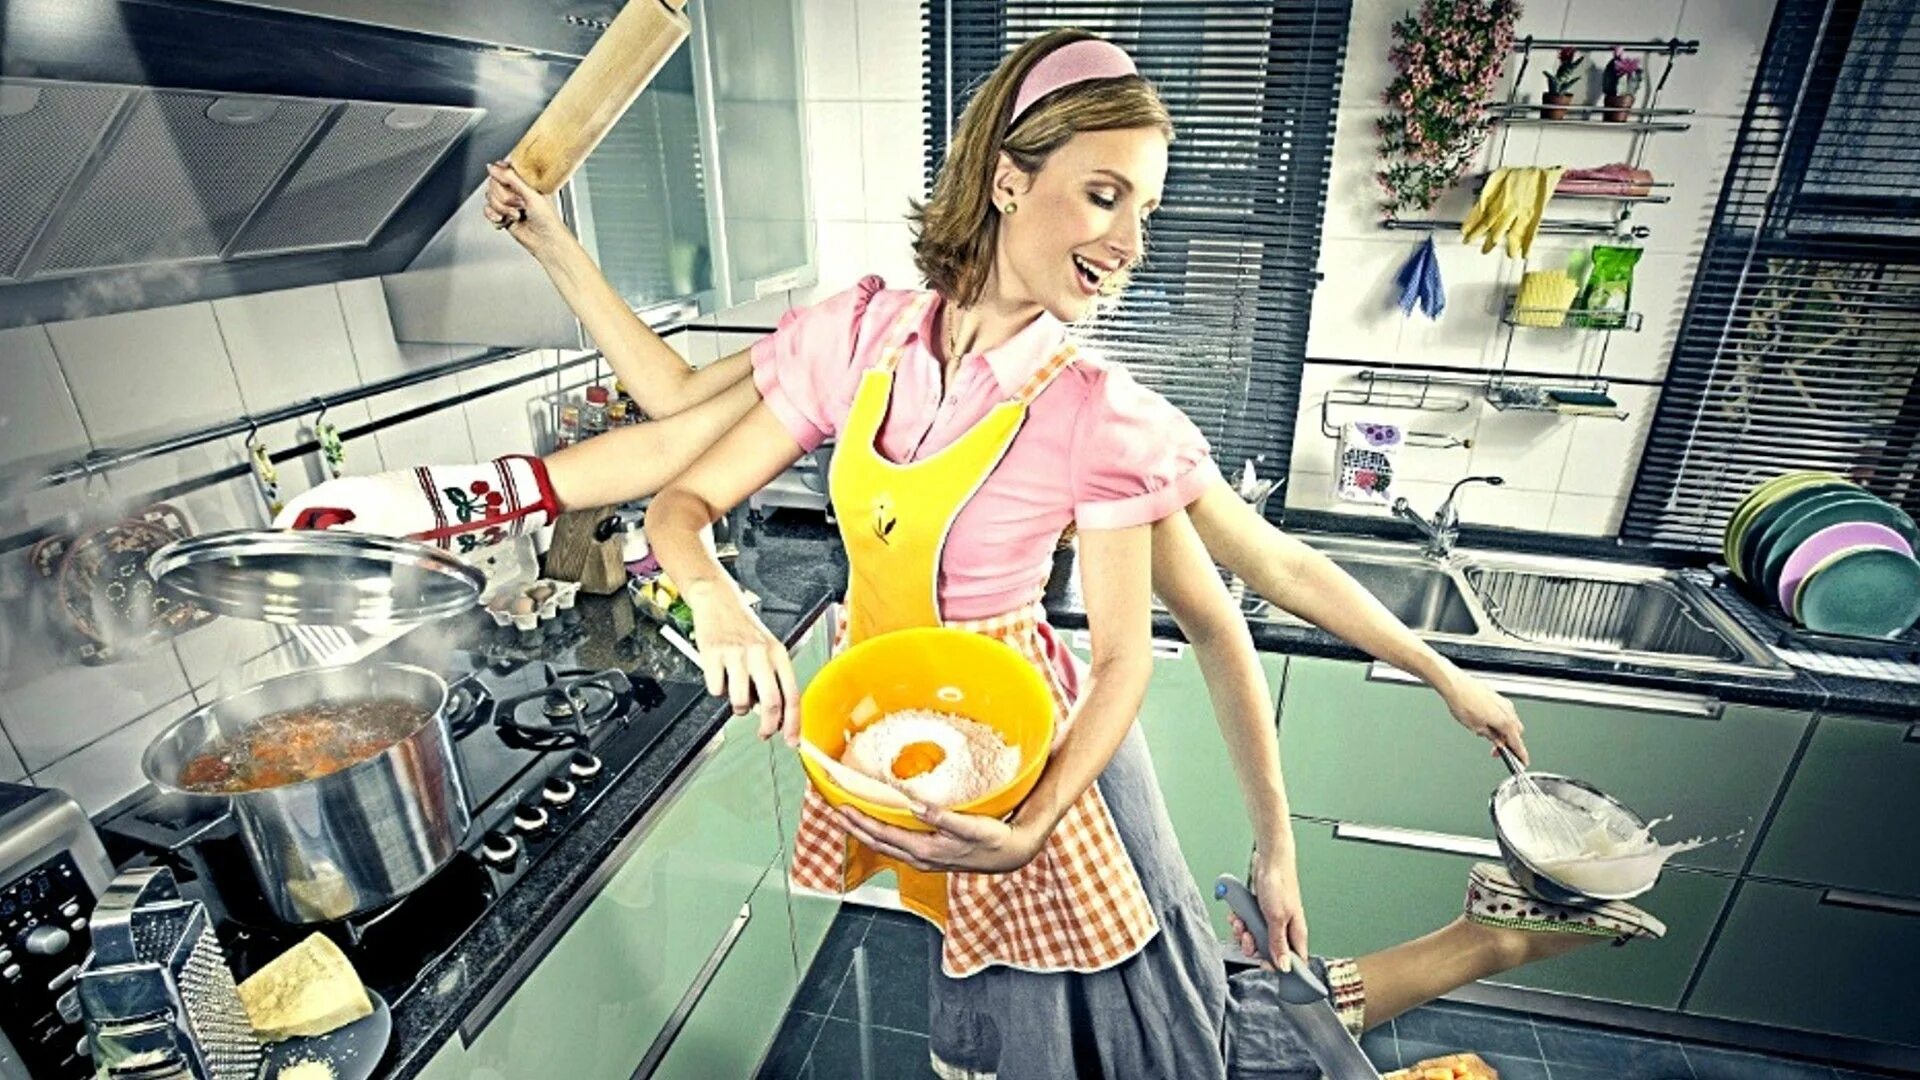 Я хозяйка этой жизни 131. Женщина домохозяйка. Кухня. Домохозяйка со стажем. Примерная жена.